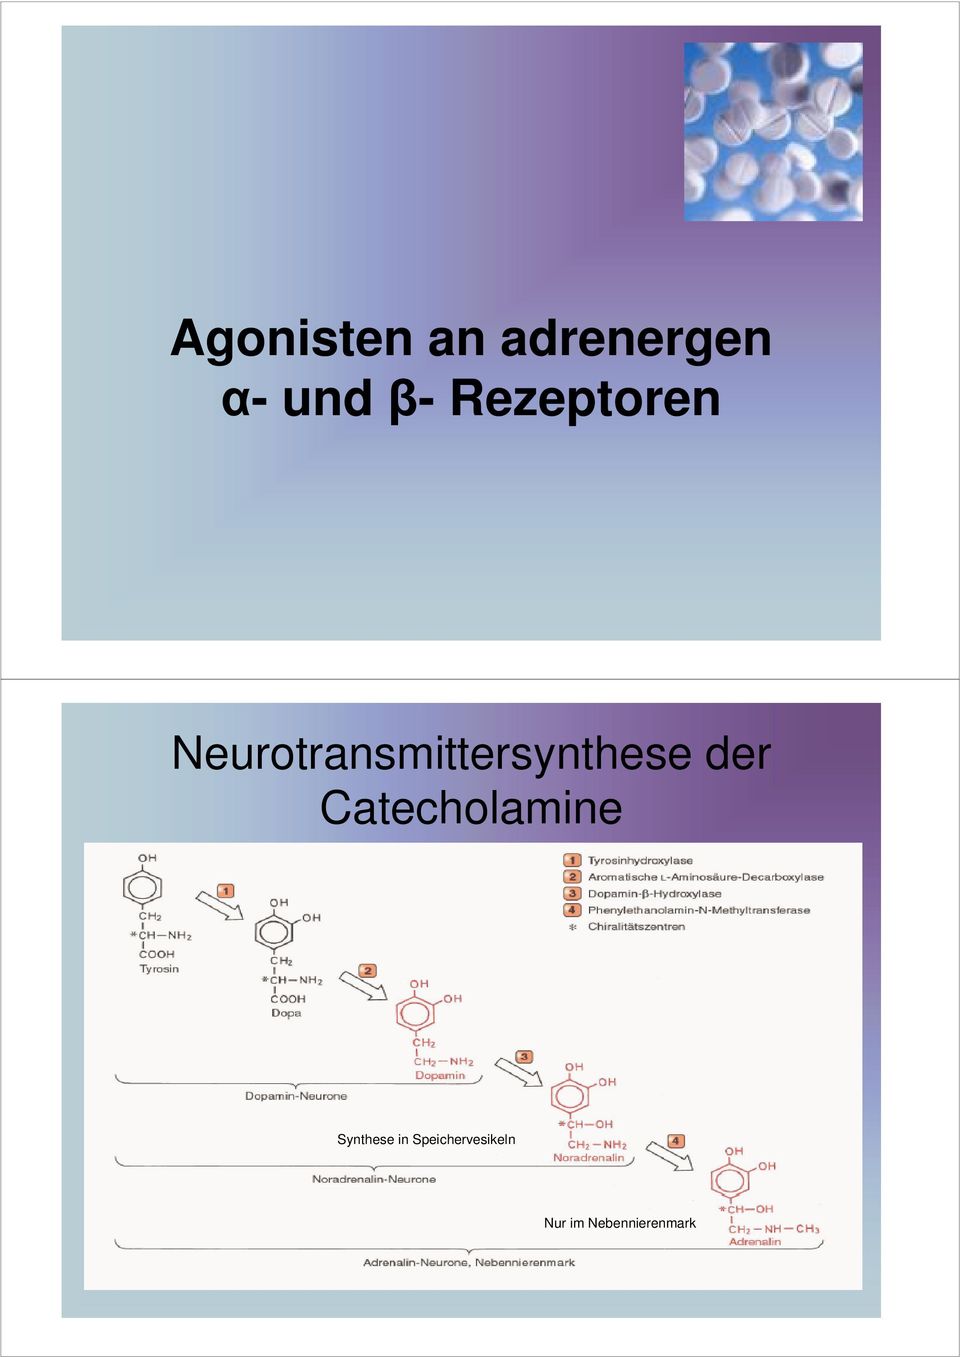 Neurotransmittersynthese der